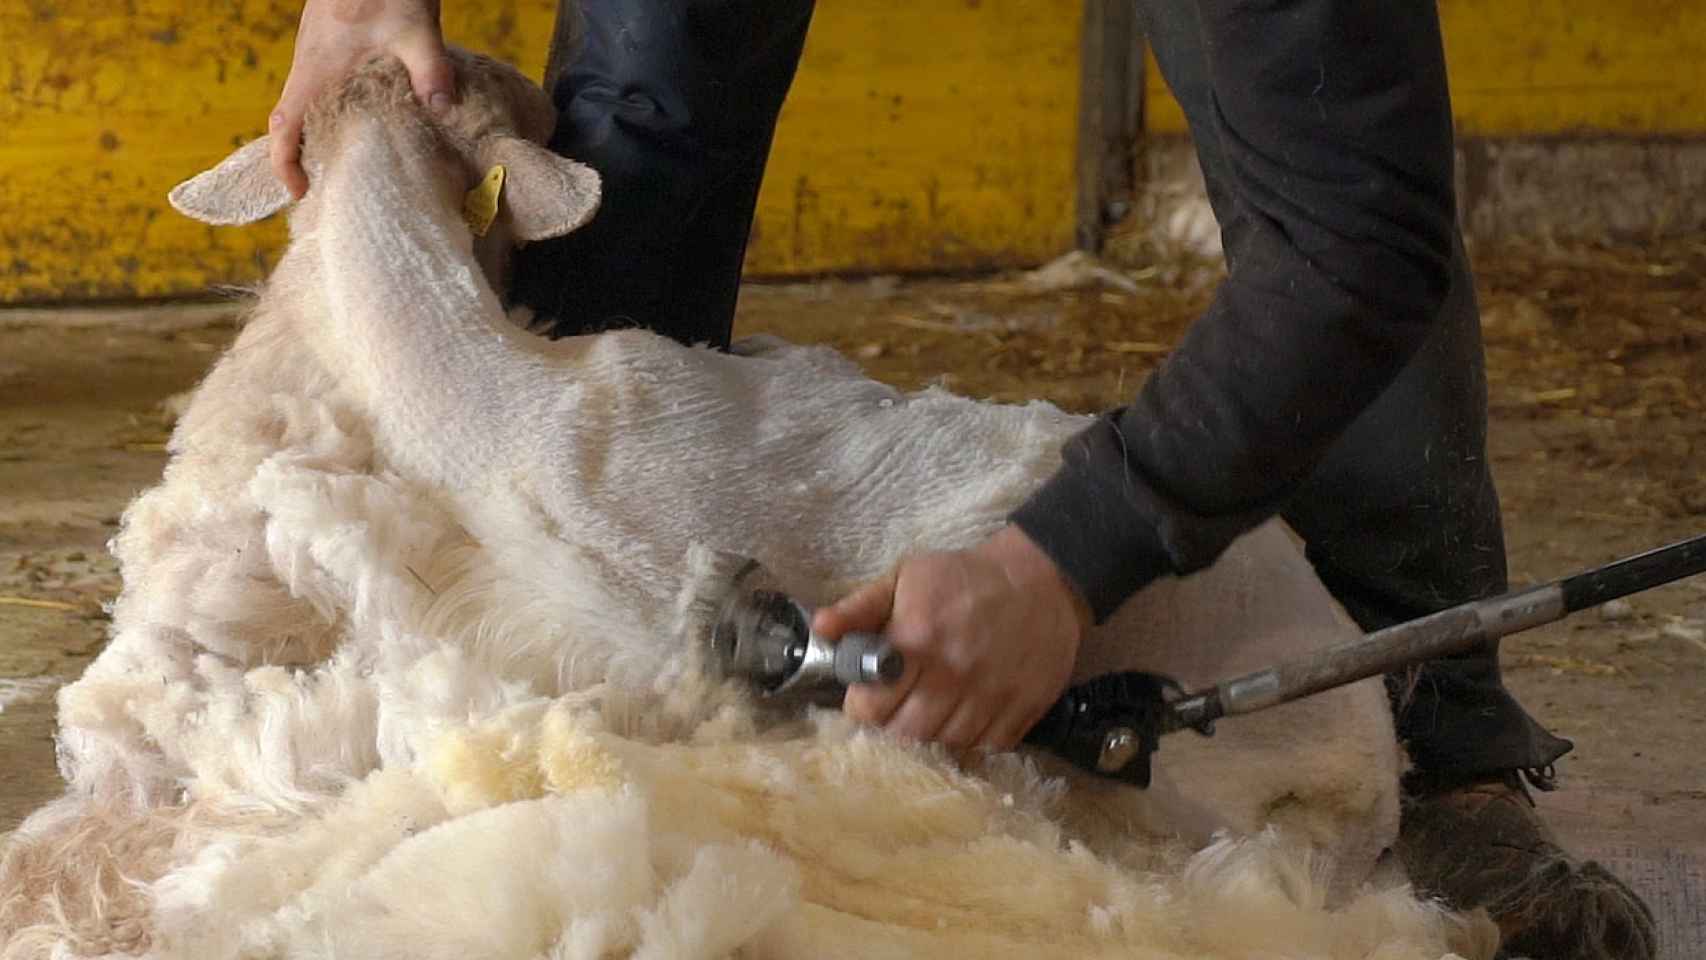 La lana latxa, hasta ahora, no tenía ningún valor y se tiraba como residuo.